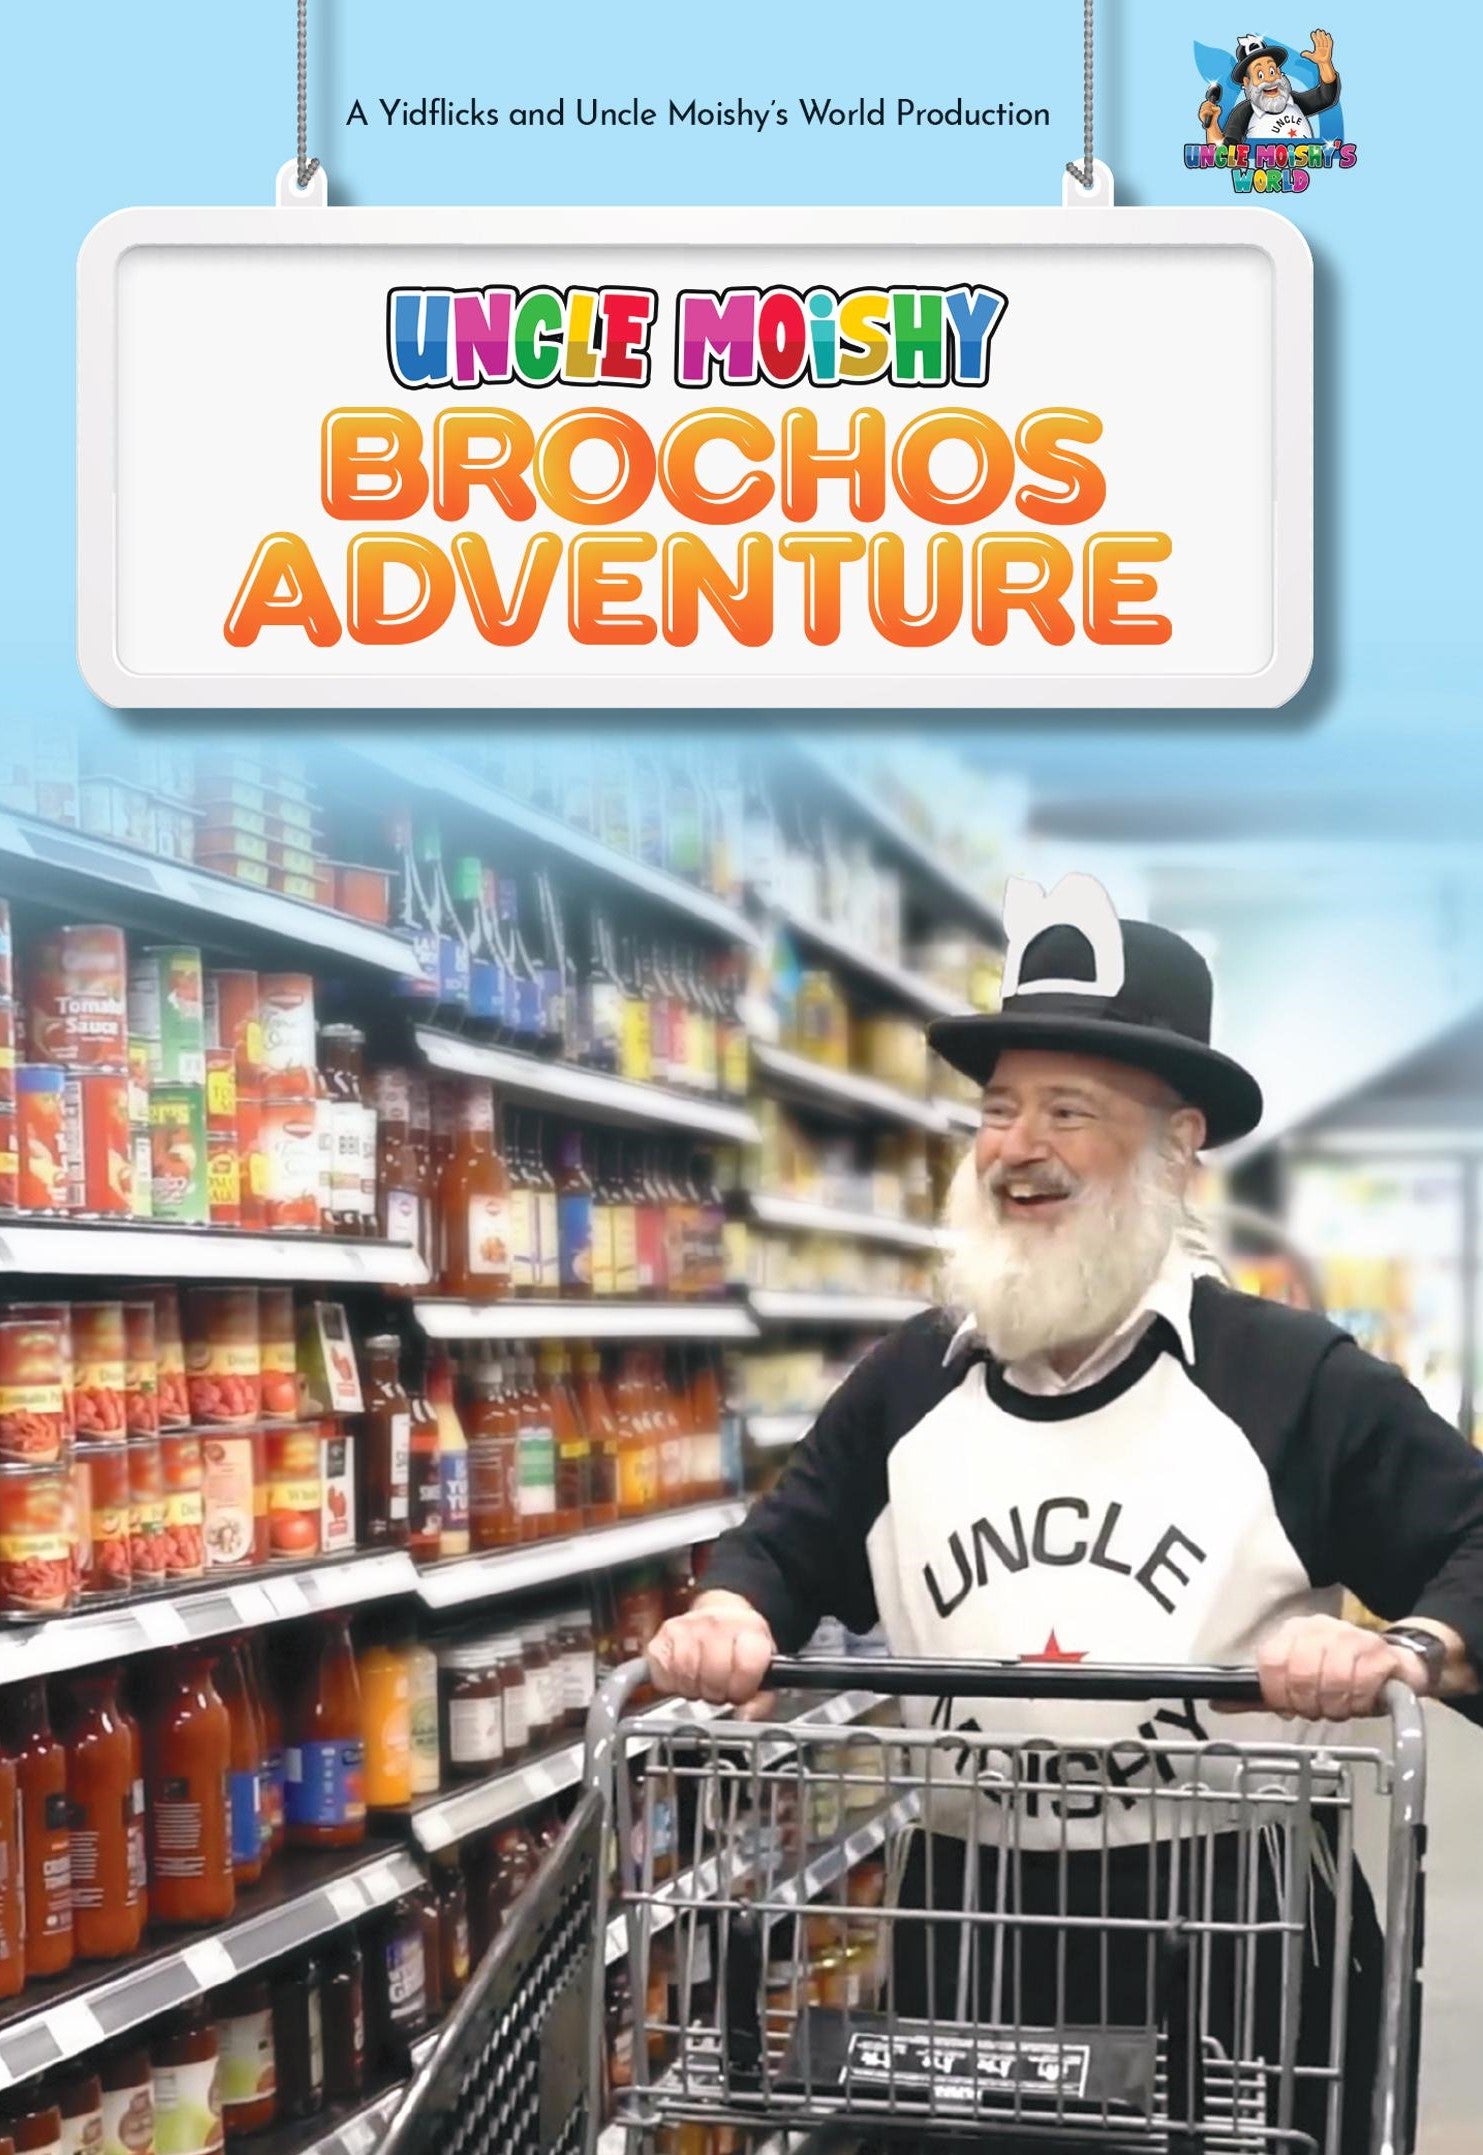 Uncle Moishy - Brochos Adventure (Video)